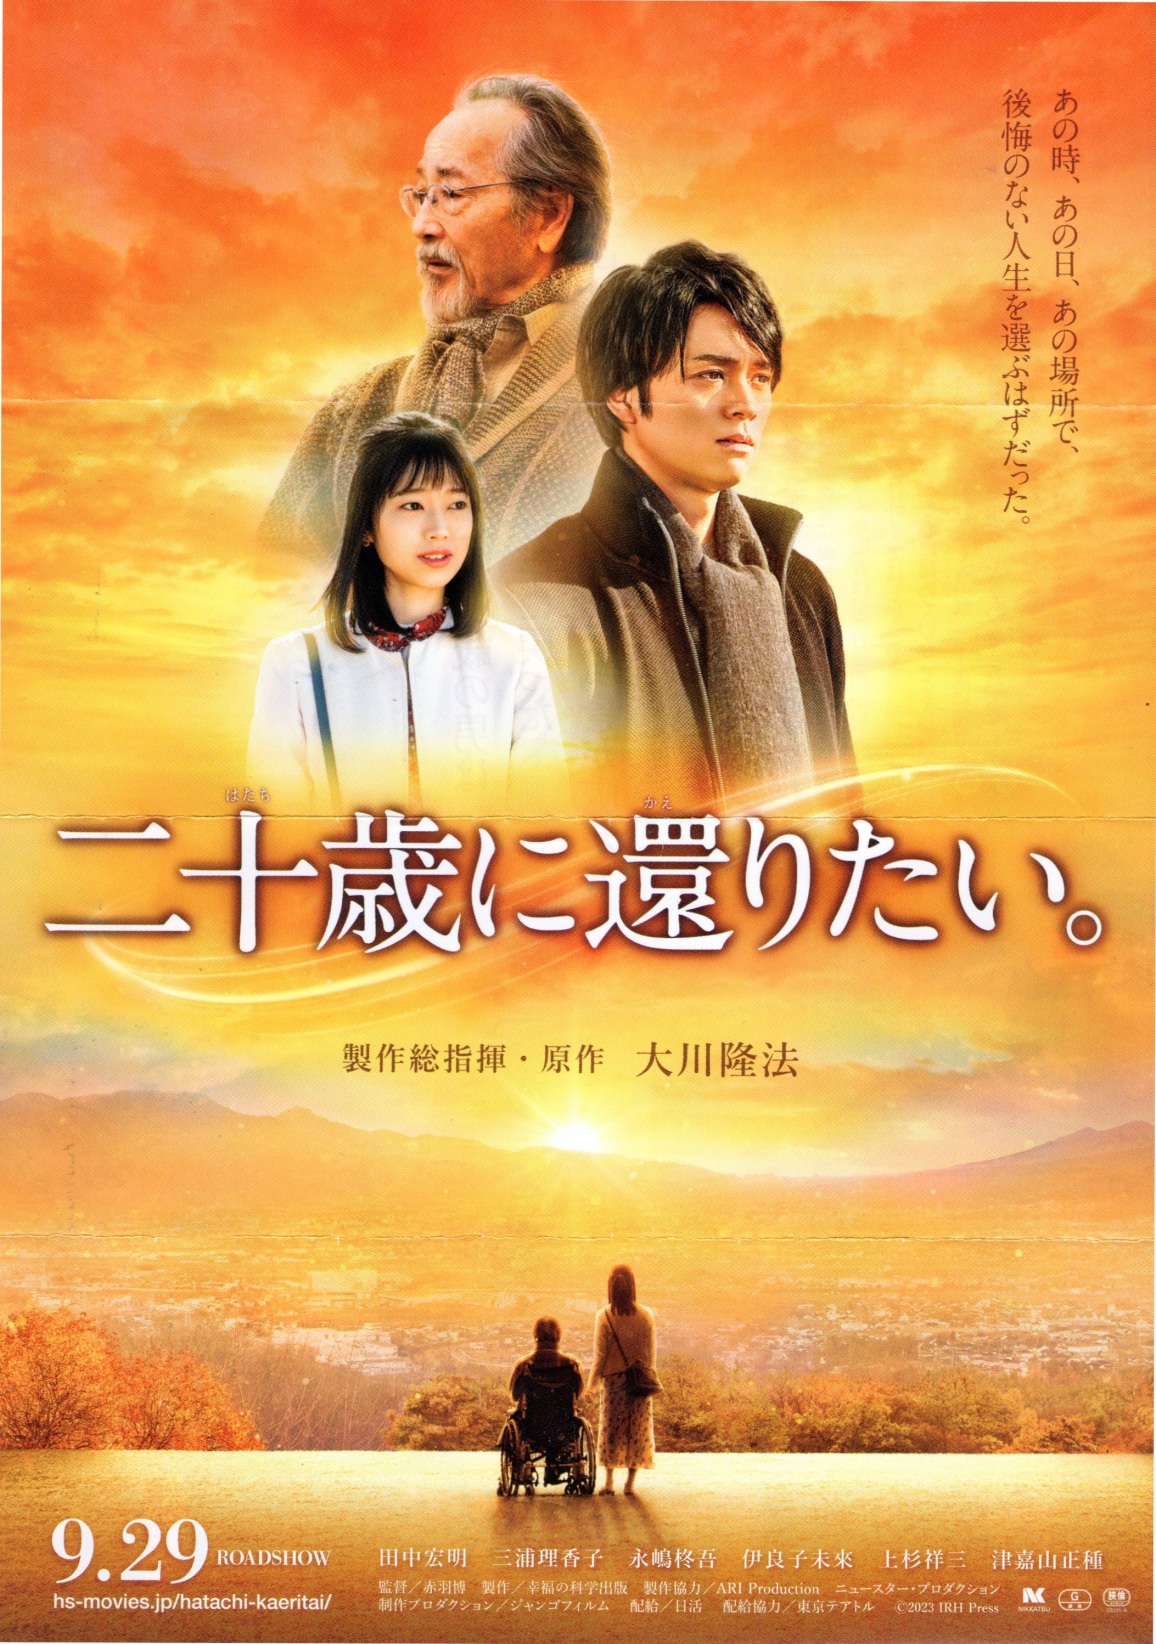 ̂ȂlIԂ͂B̎A̓ȀꏊŁA \΂Ɋ҂肽B 쑍wE 엲@ cG OYq iA ɗǎq 㐙ˎO ÉÎR hs-movies.jp/hatachi-kaeritai/ c 2023 IRH Press